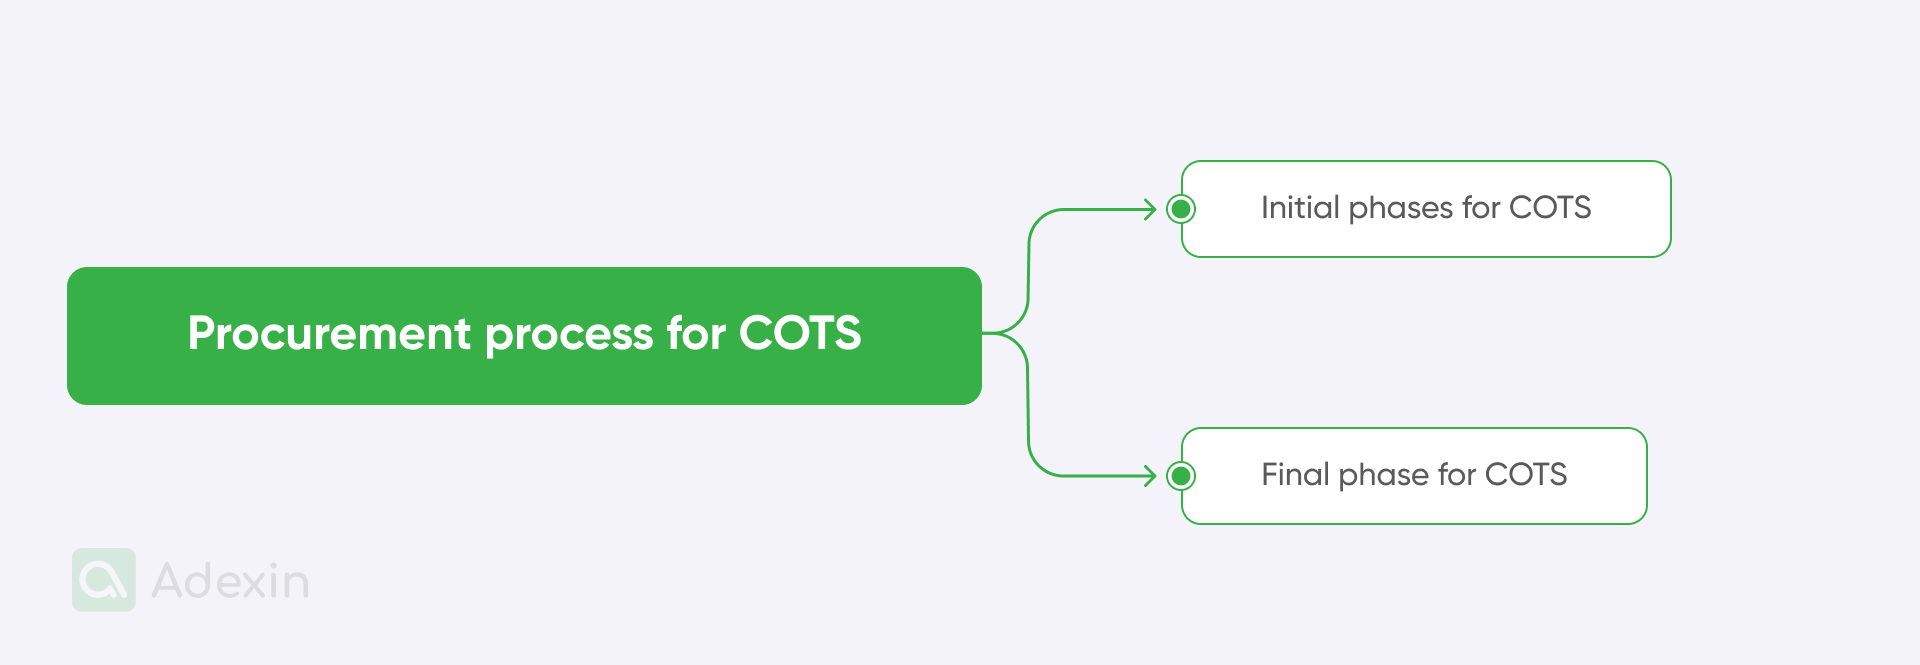 Procurement process for COTS